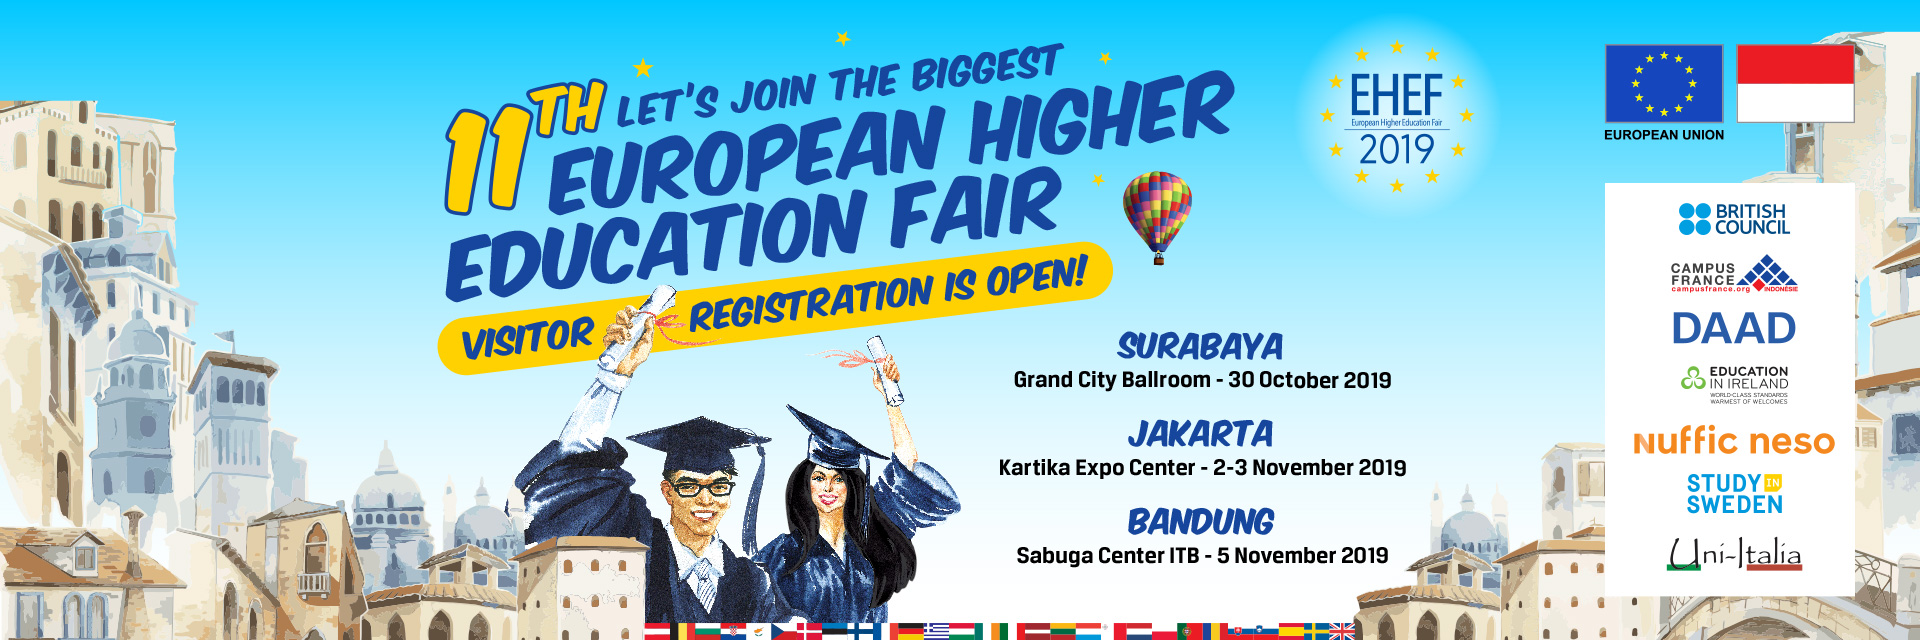 European Higher Education Fair (EHEF) 2019 